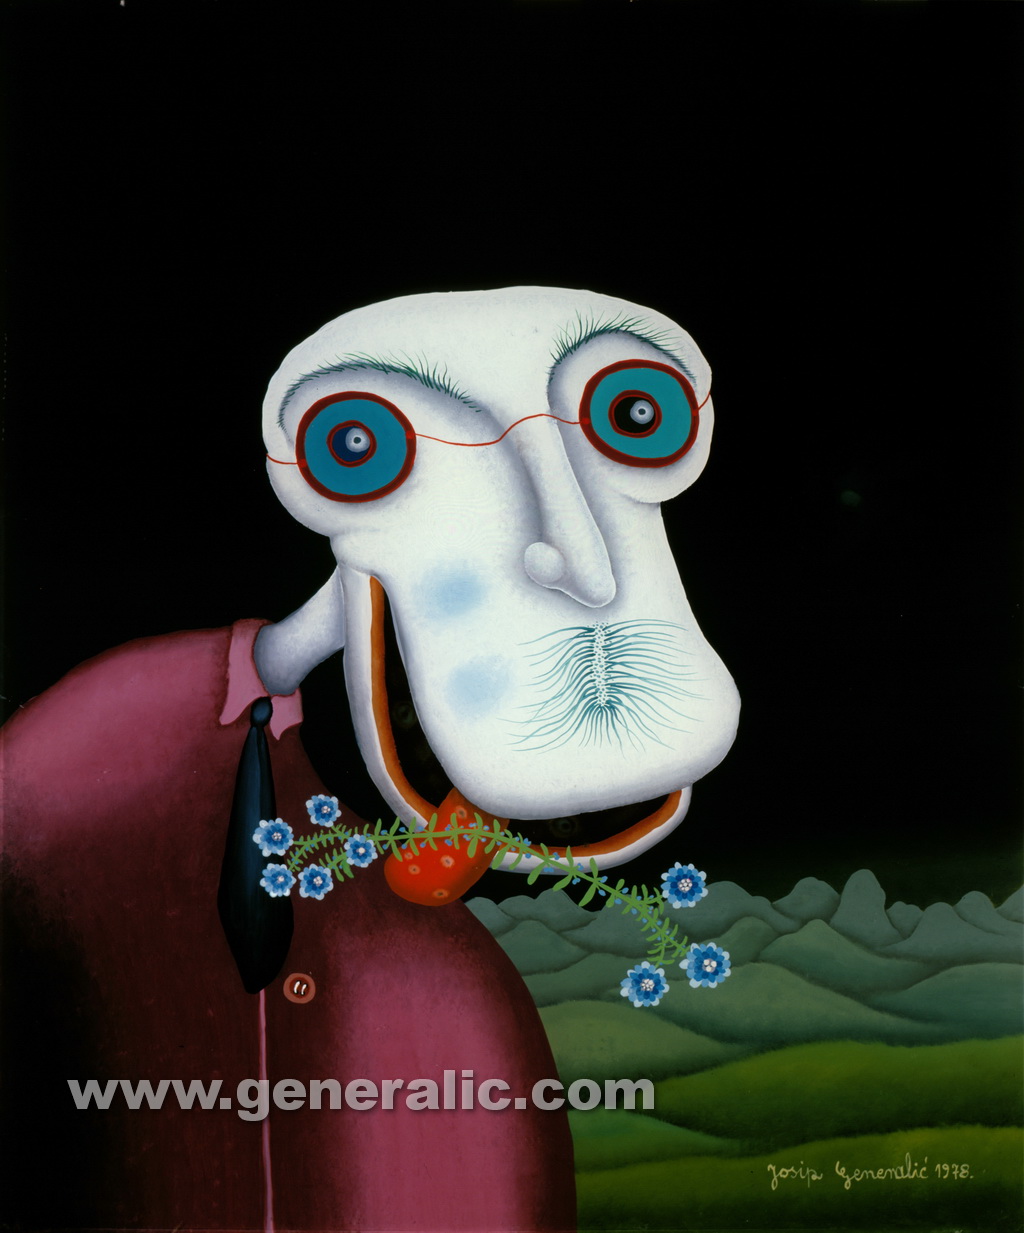 Josip Generalic, 1978, White head monster, oil on glass, 60x55 cm